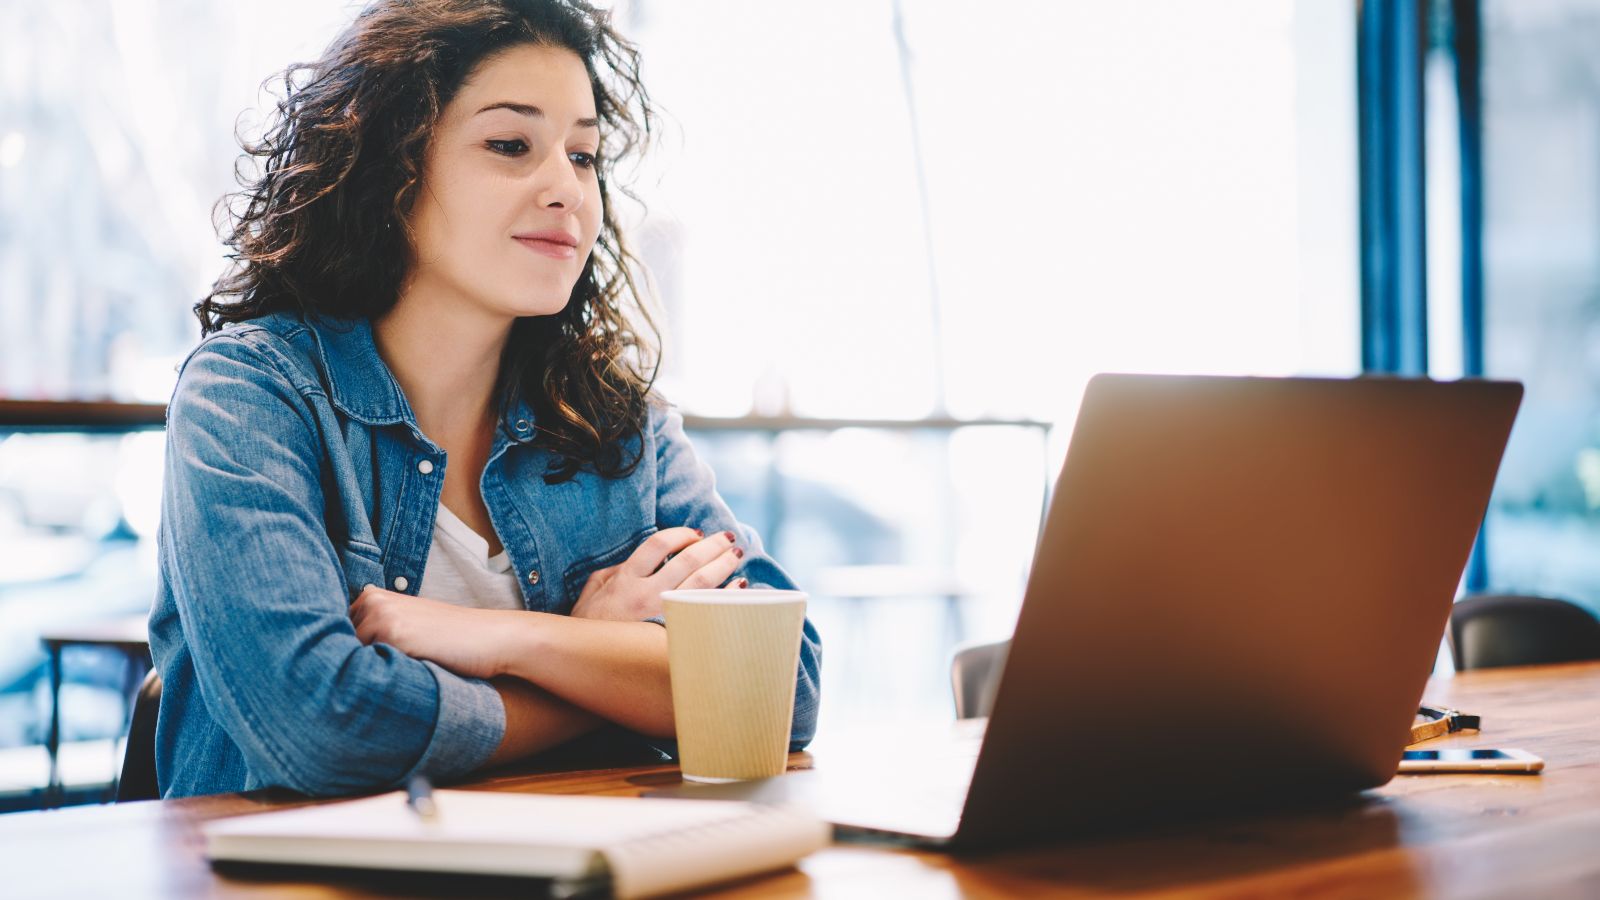 Eine junge Frau sitzt aufmerksam mit Kaffeebecher und Notizblock vor einem aufgeklappten Laptop.